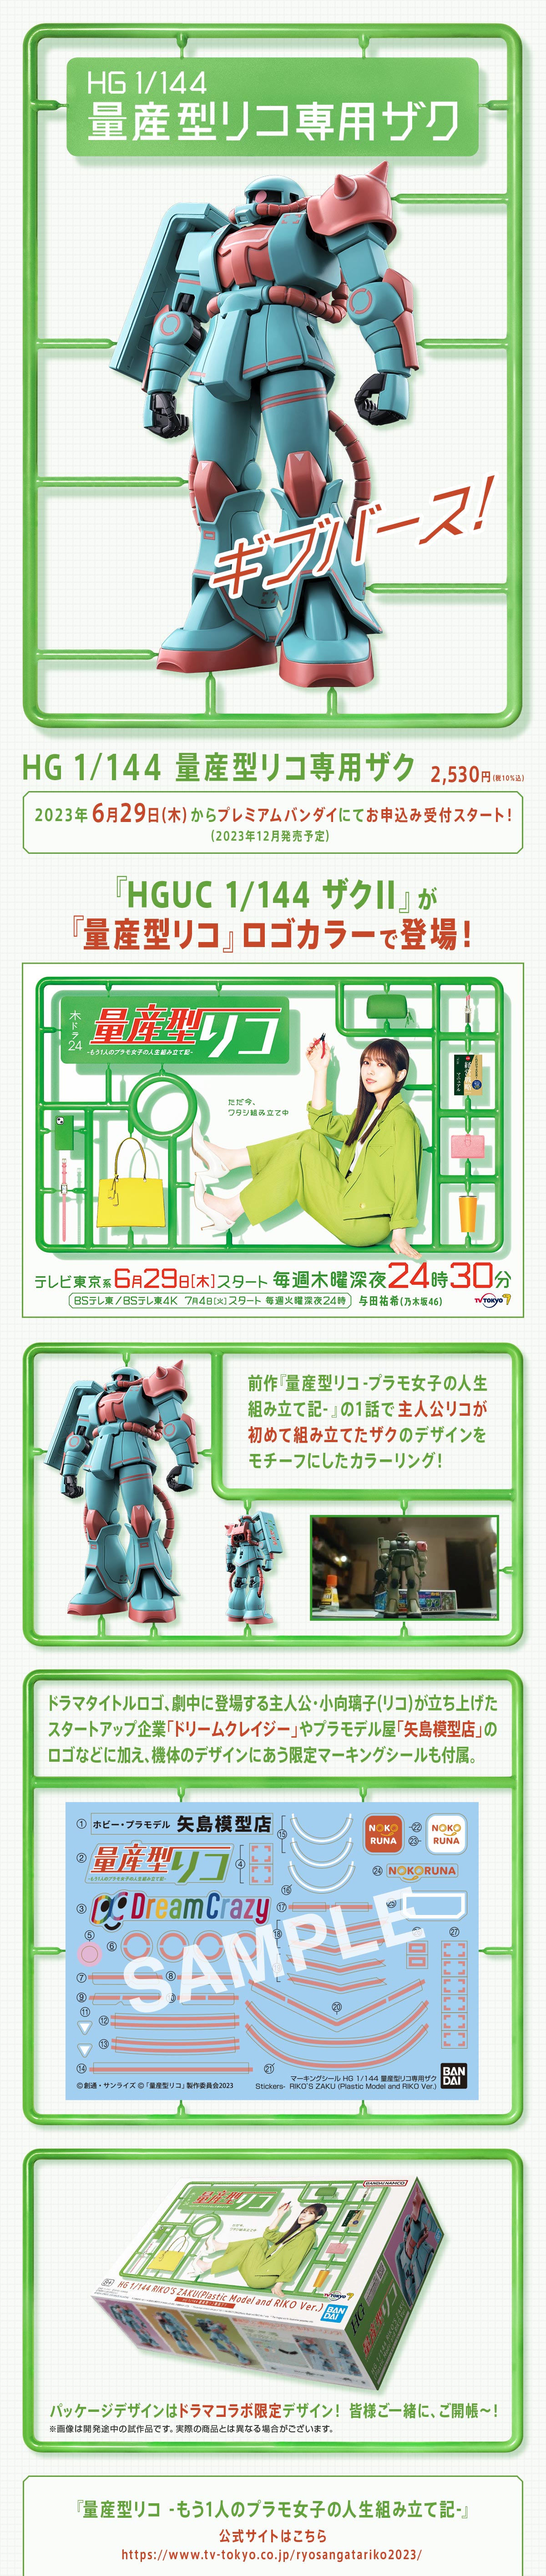 HG 1/144 MS-06 Riko's Zaku(Plastic Model and Riko Version)